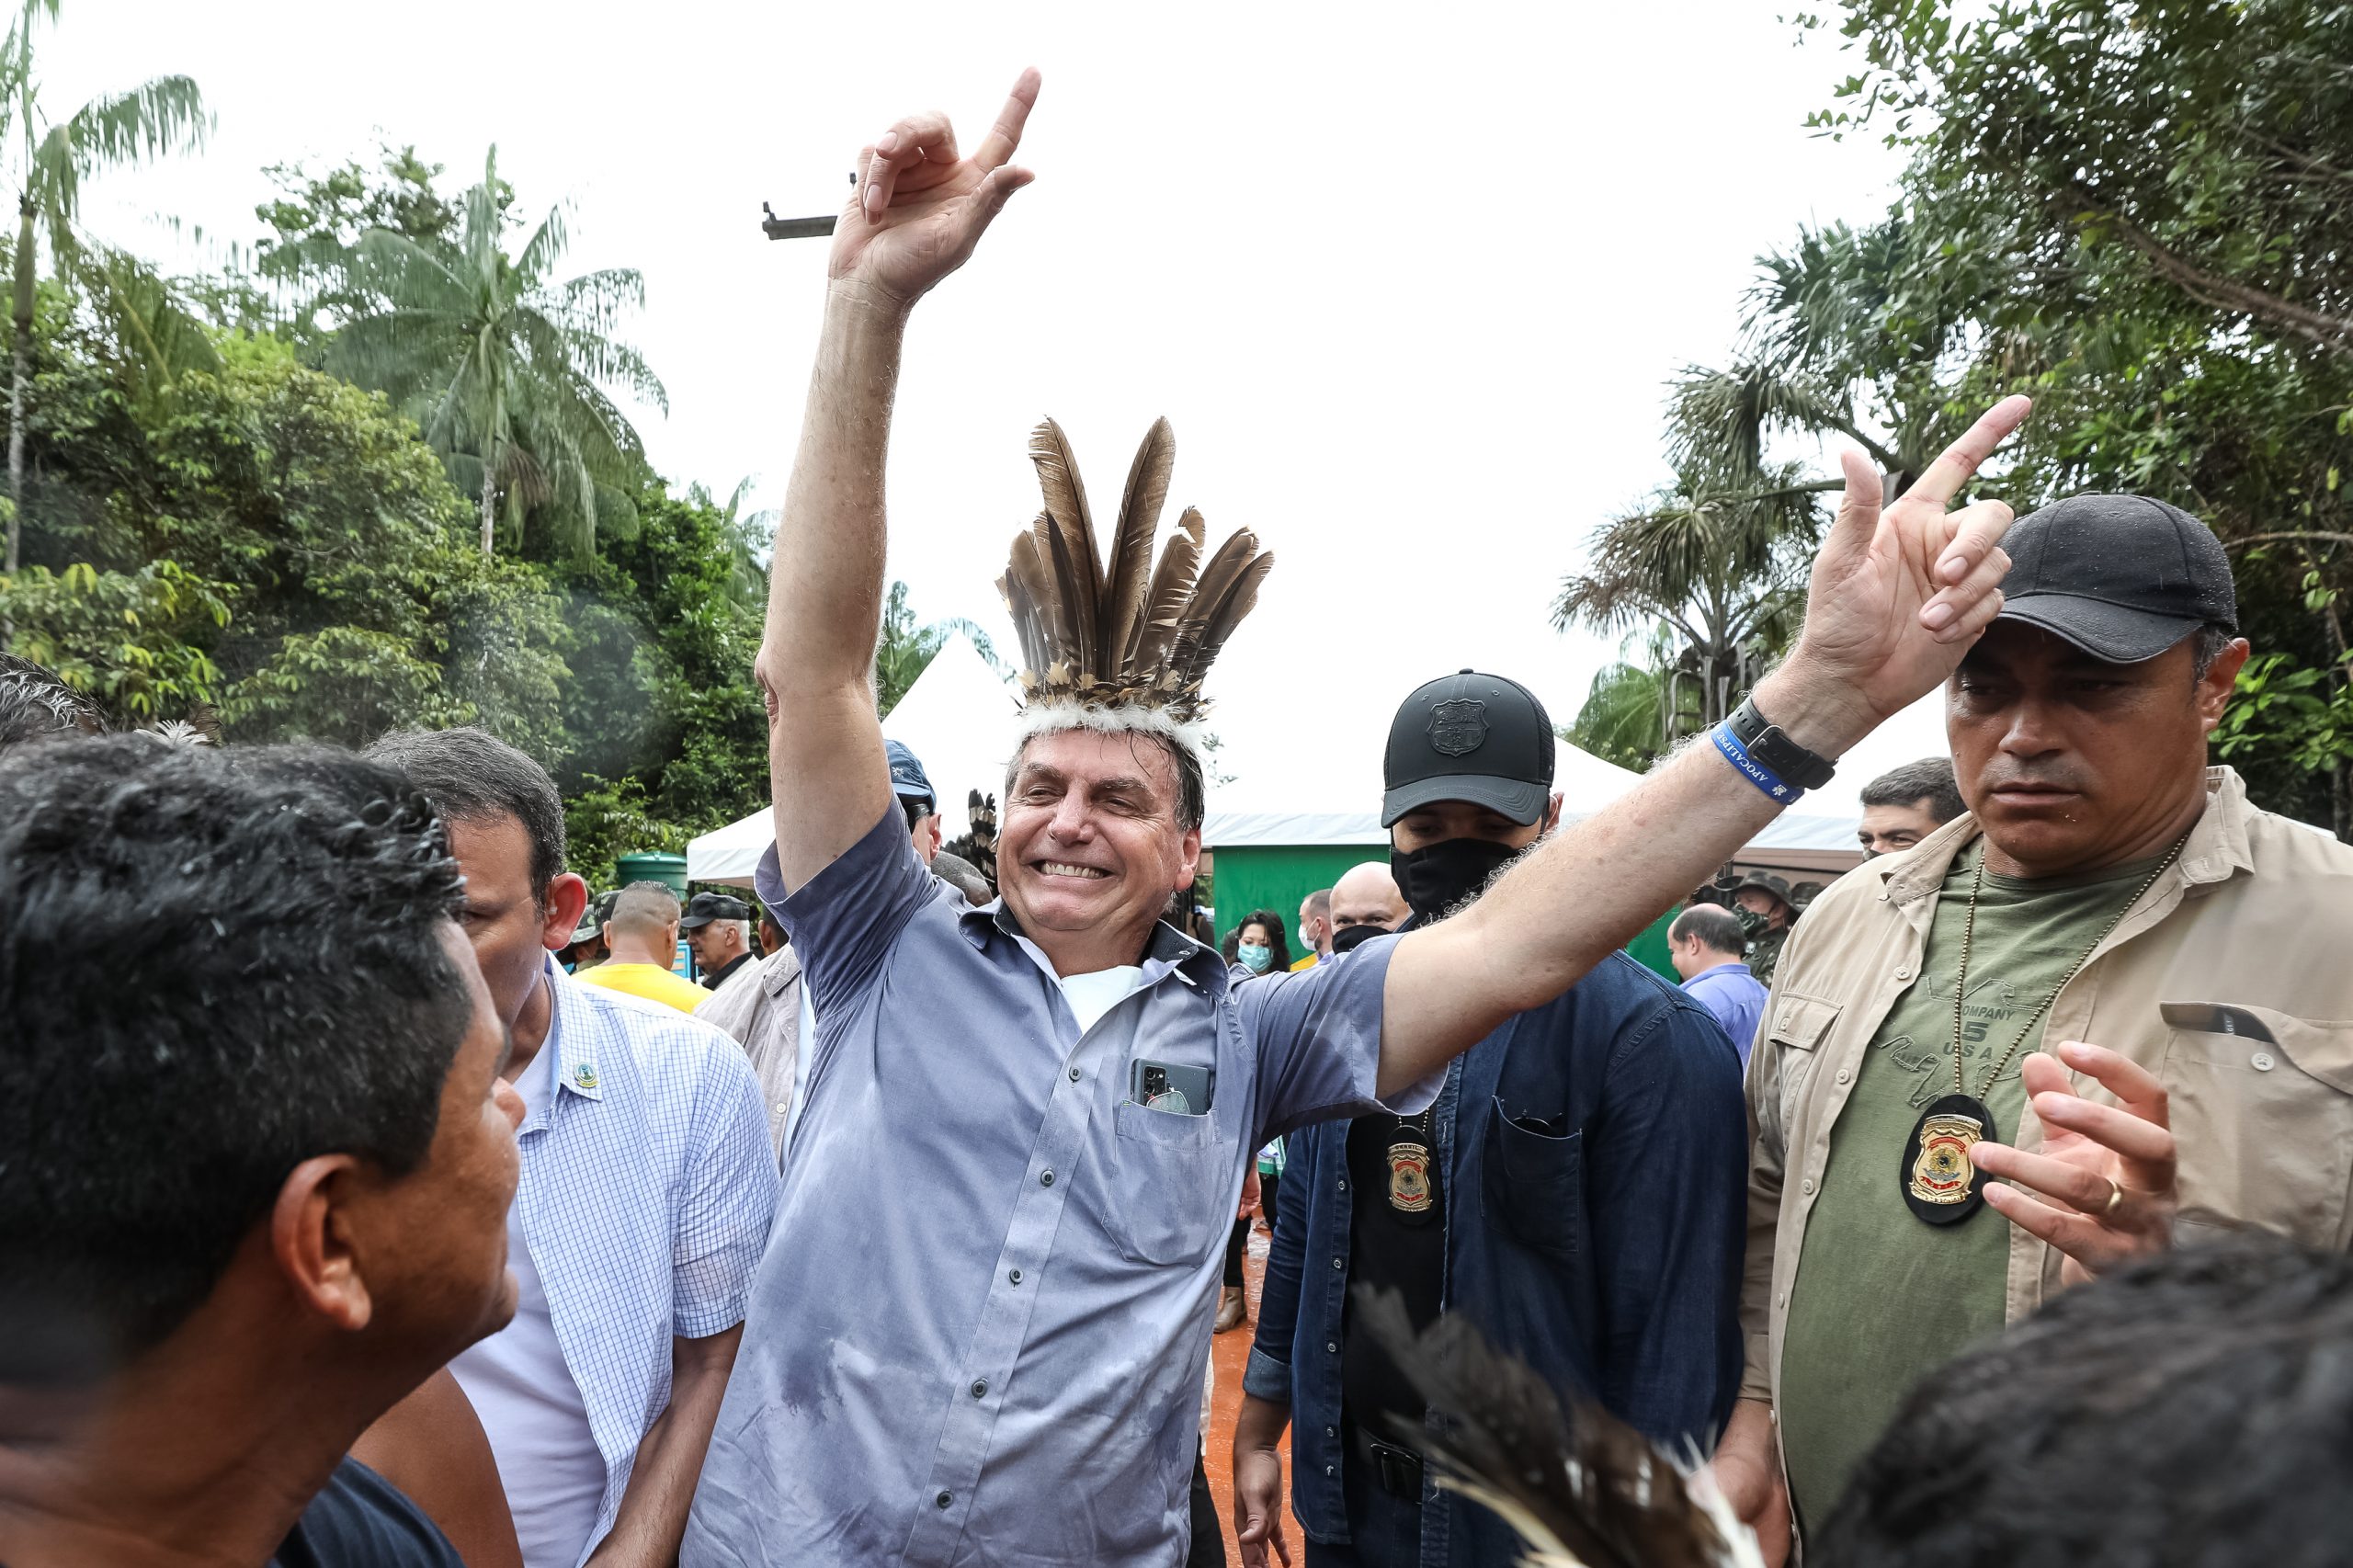 Sob clima de festa, indígenas recebem Bolsonaro com euforia e muitas fotos 15